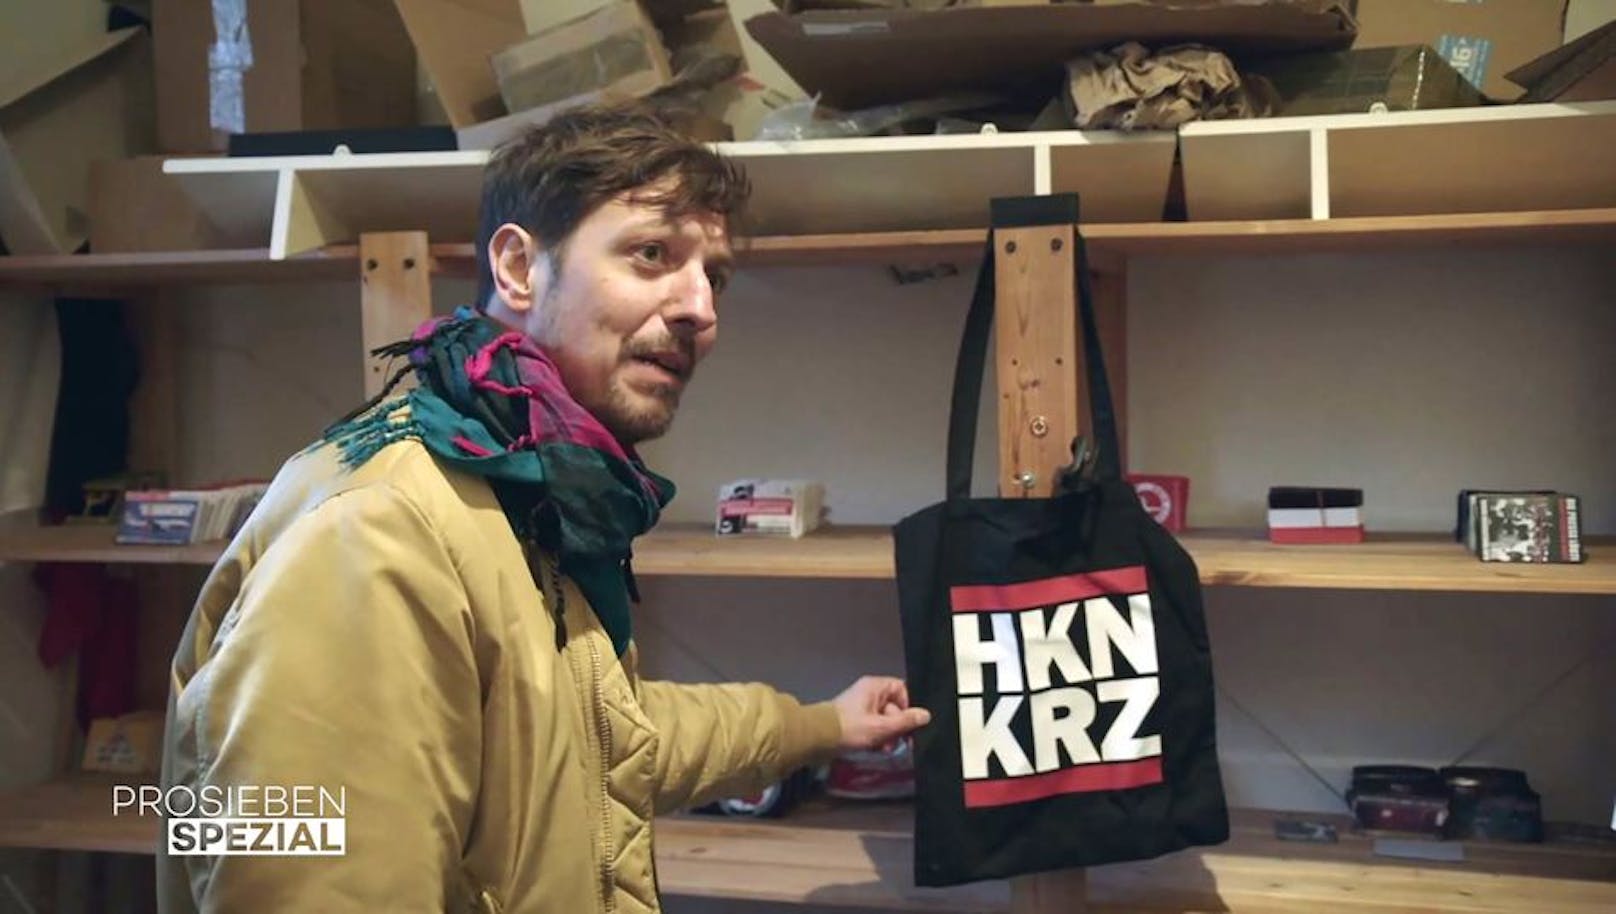 Szene aus "Rechts. Deutsch. Radikal": "HKNKRZ"-Merchandise einer Kleinstpartei in Dortmund.